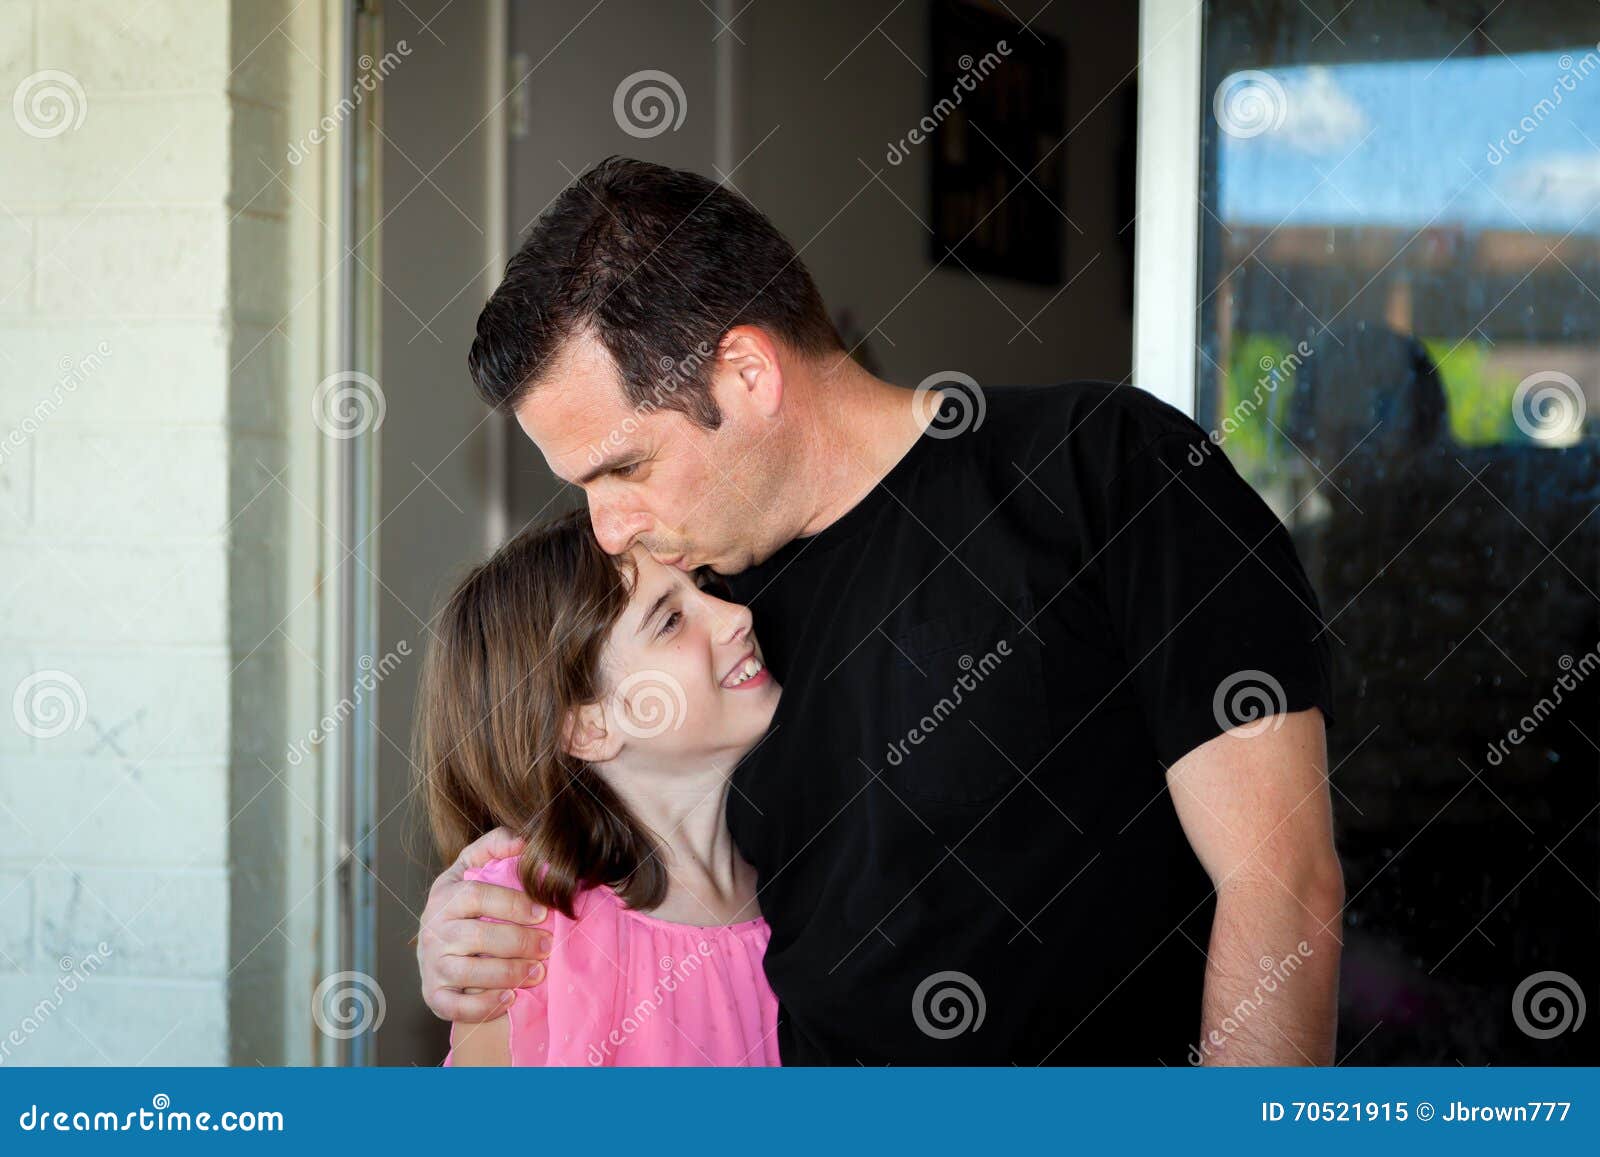 Папа дочку после школы. Поцелуй отца и дочери. Поцелуй папу. Отец целует дочь в лоб. Папа с дочкой с языком.